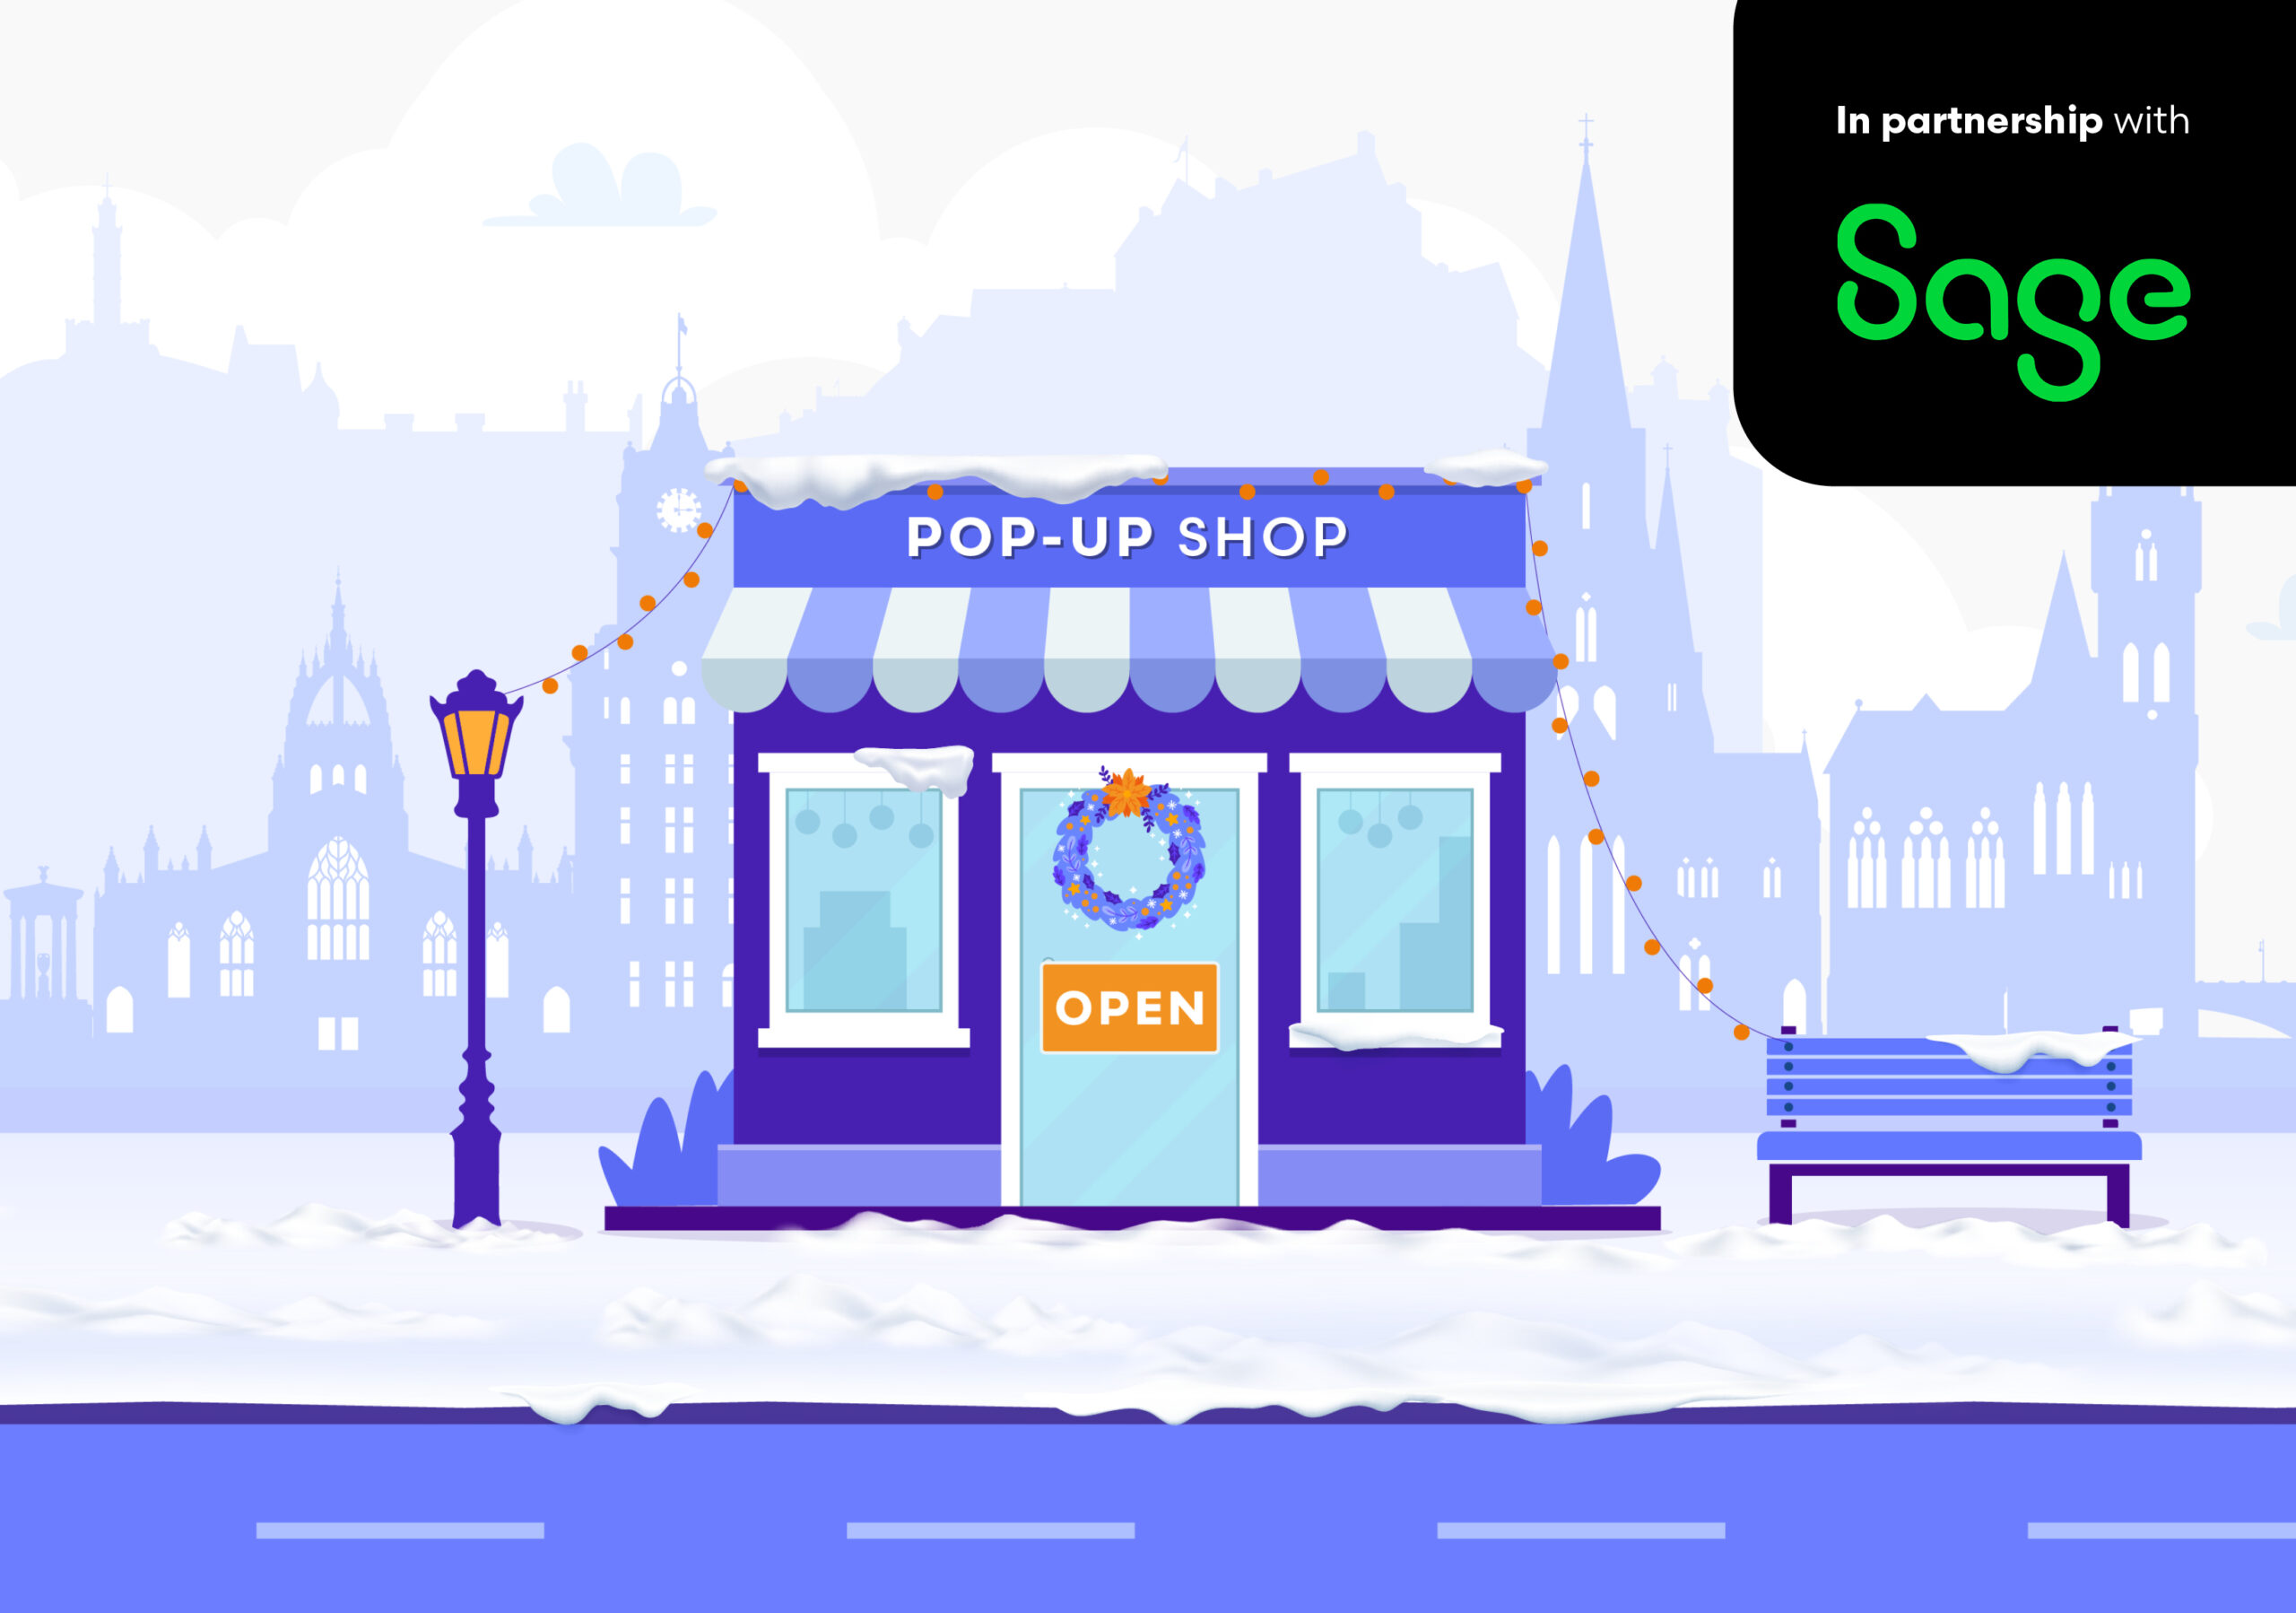 Win a pop-up shop in Edinburgh this festive period